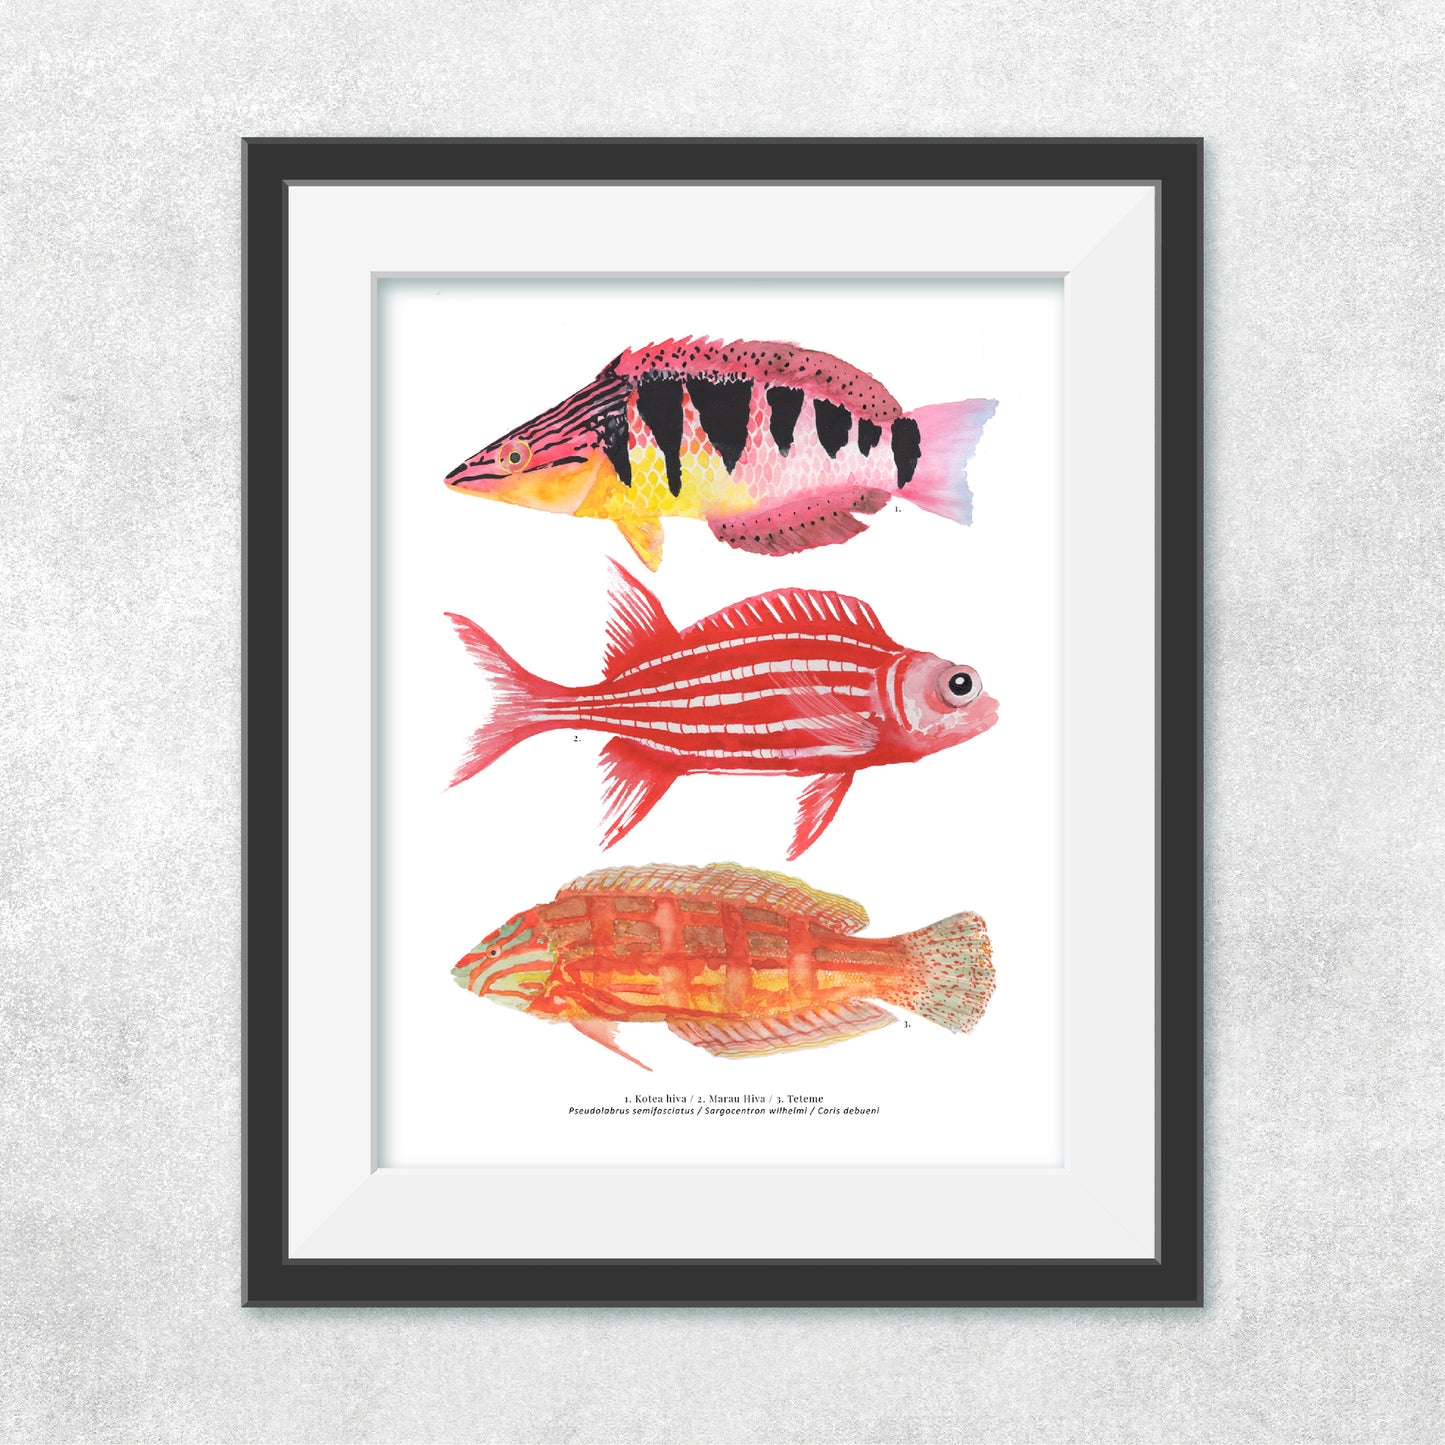 Reproducción de una ilustración en acuarela de 3 peces coloridos, pez Kotea hiva,  pez marau hiva, pez teteme, con o sin marco.